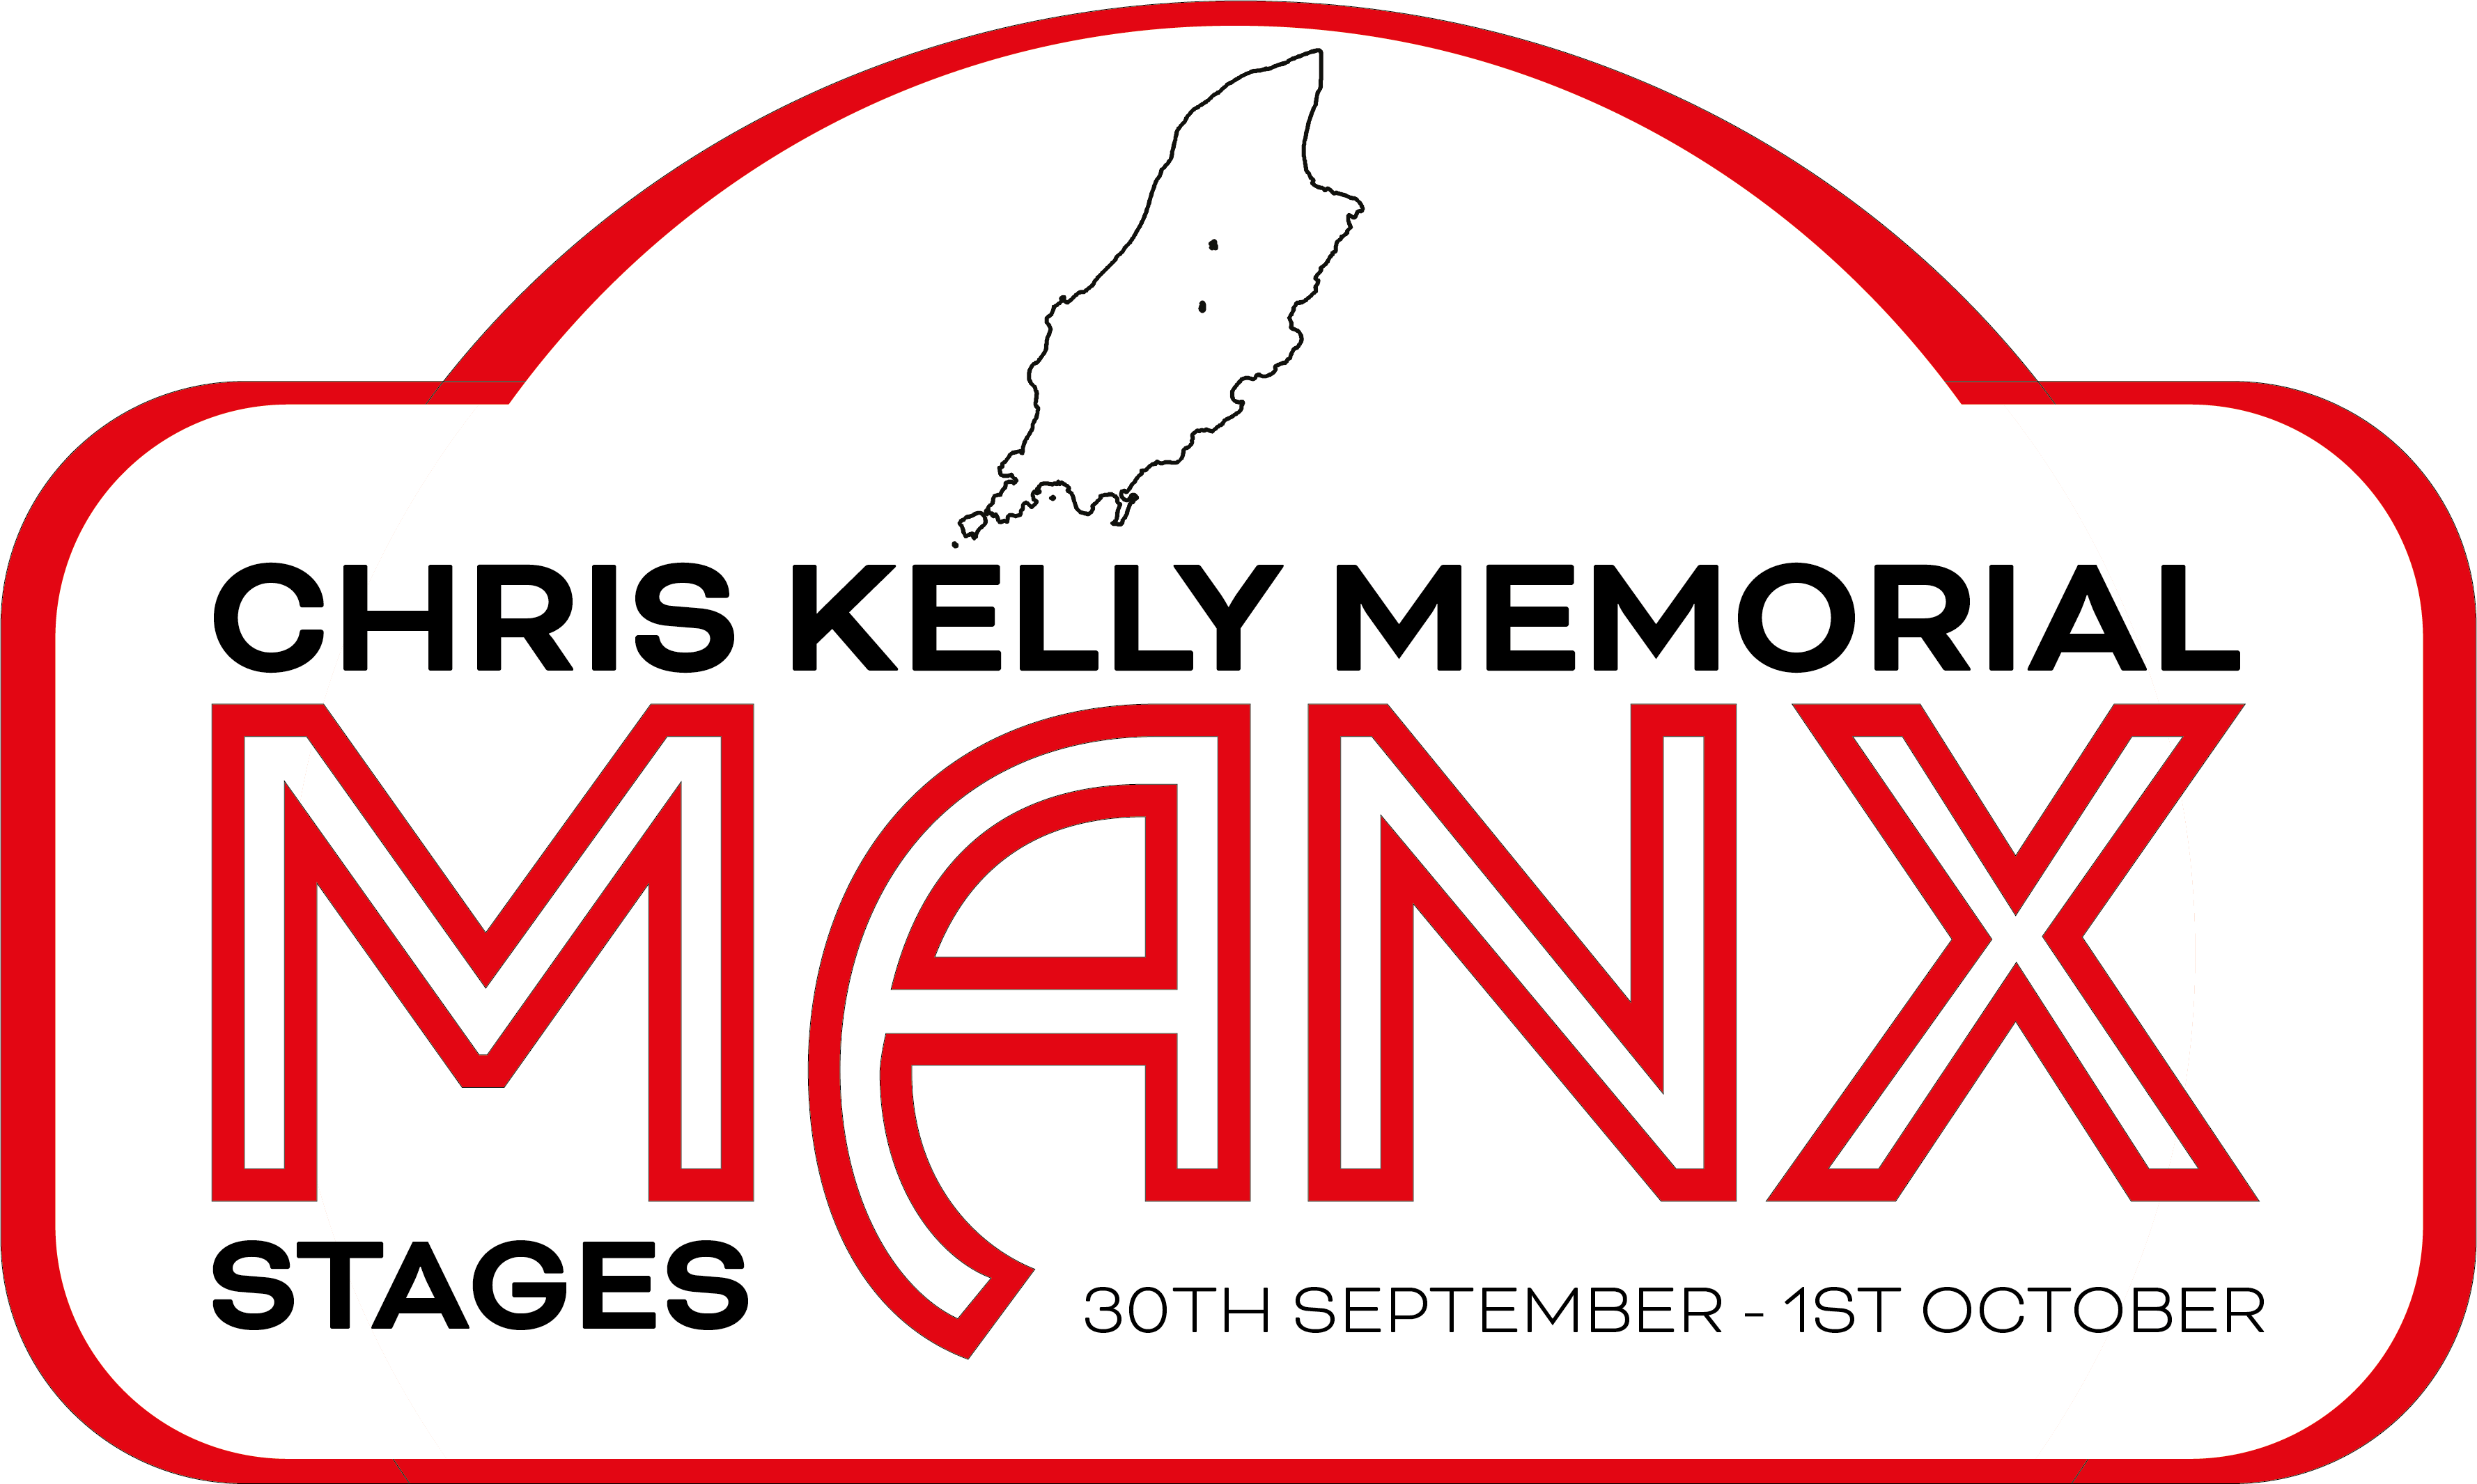 Chris Kelly Memorial Manx Rally 2022